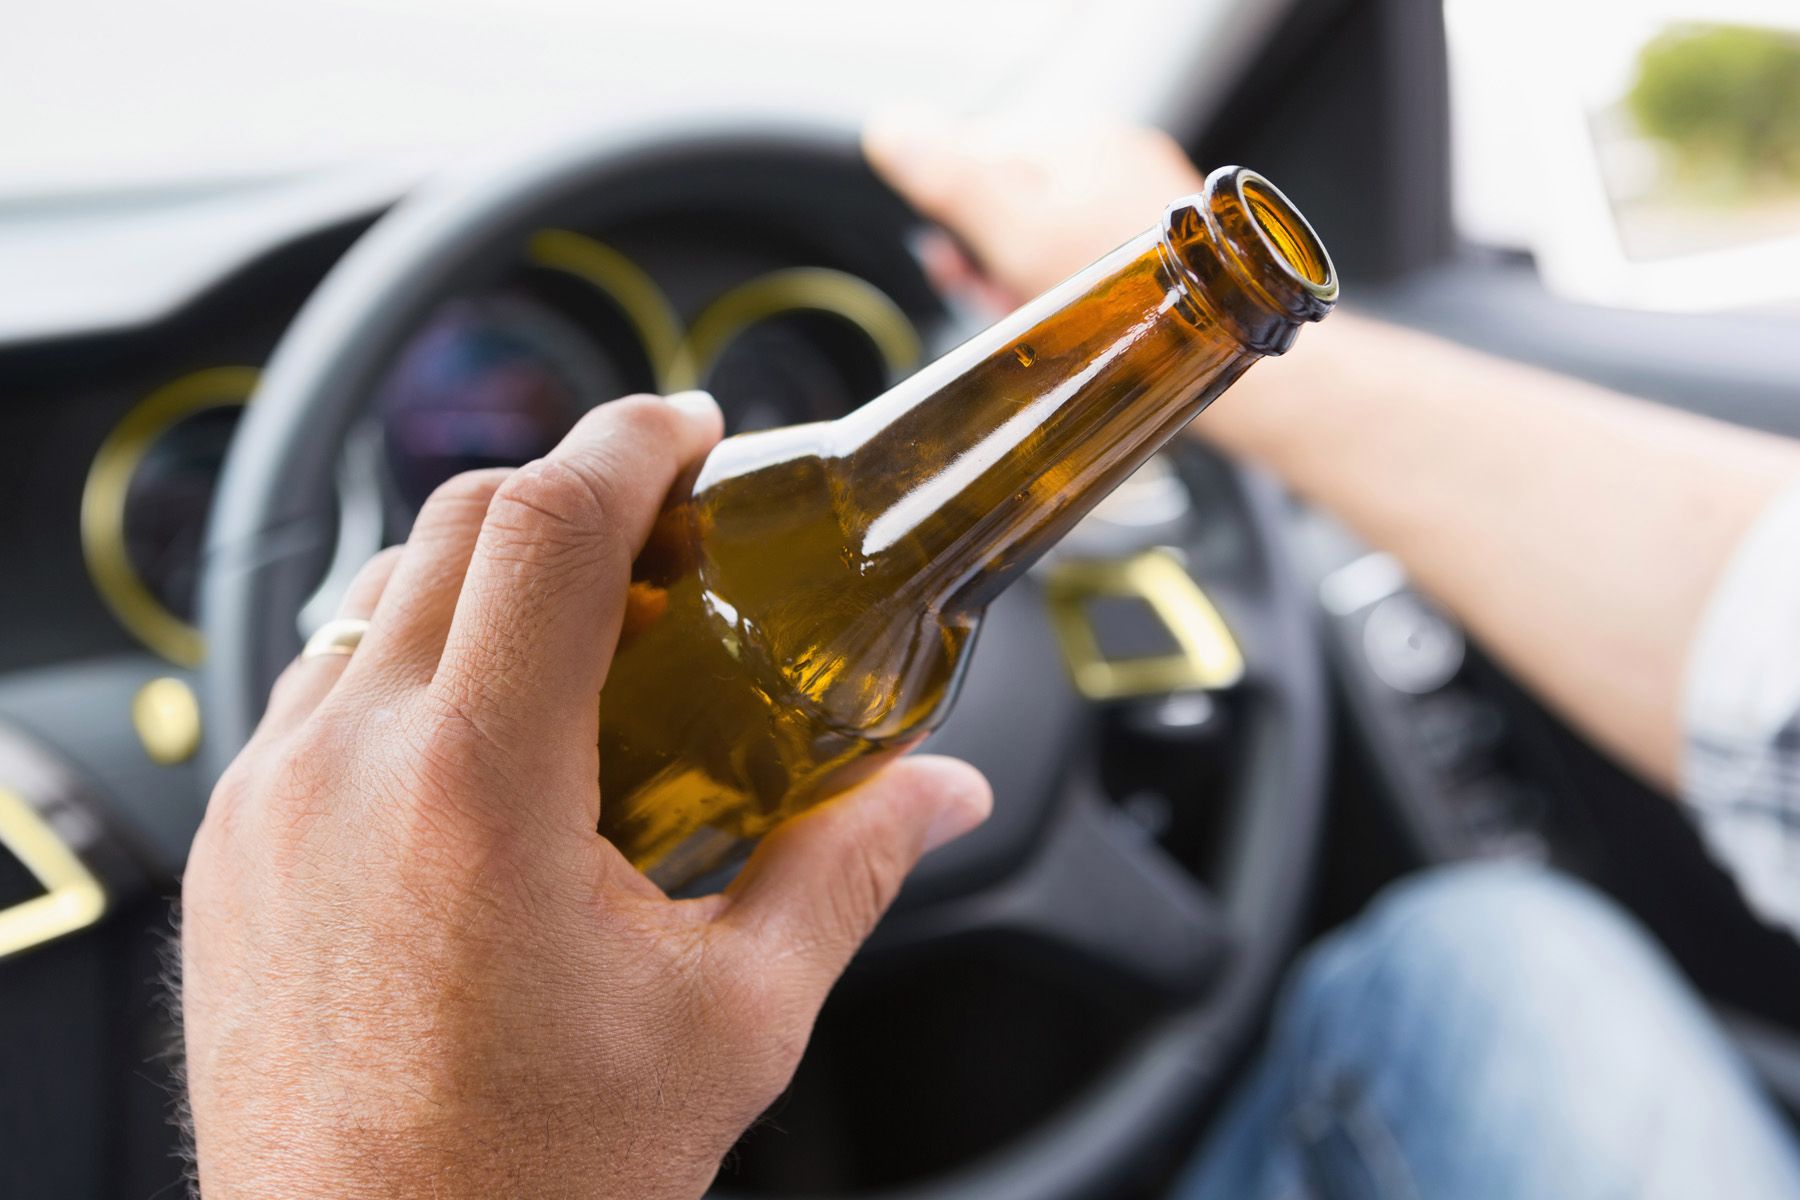 UP: Uhapšeno 27 vozača zbog vožnje u alkoholisanom stanju